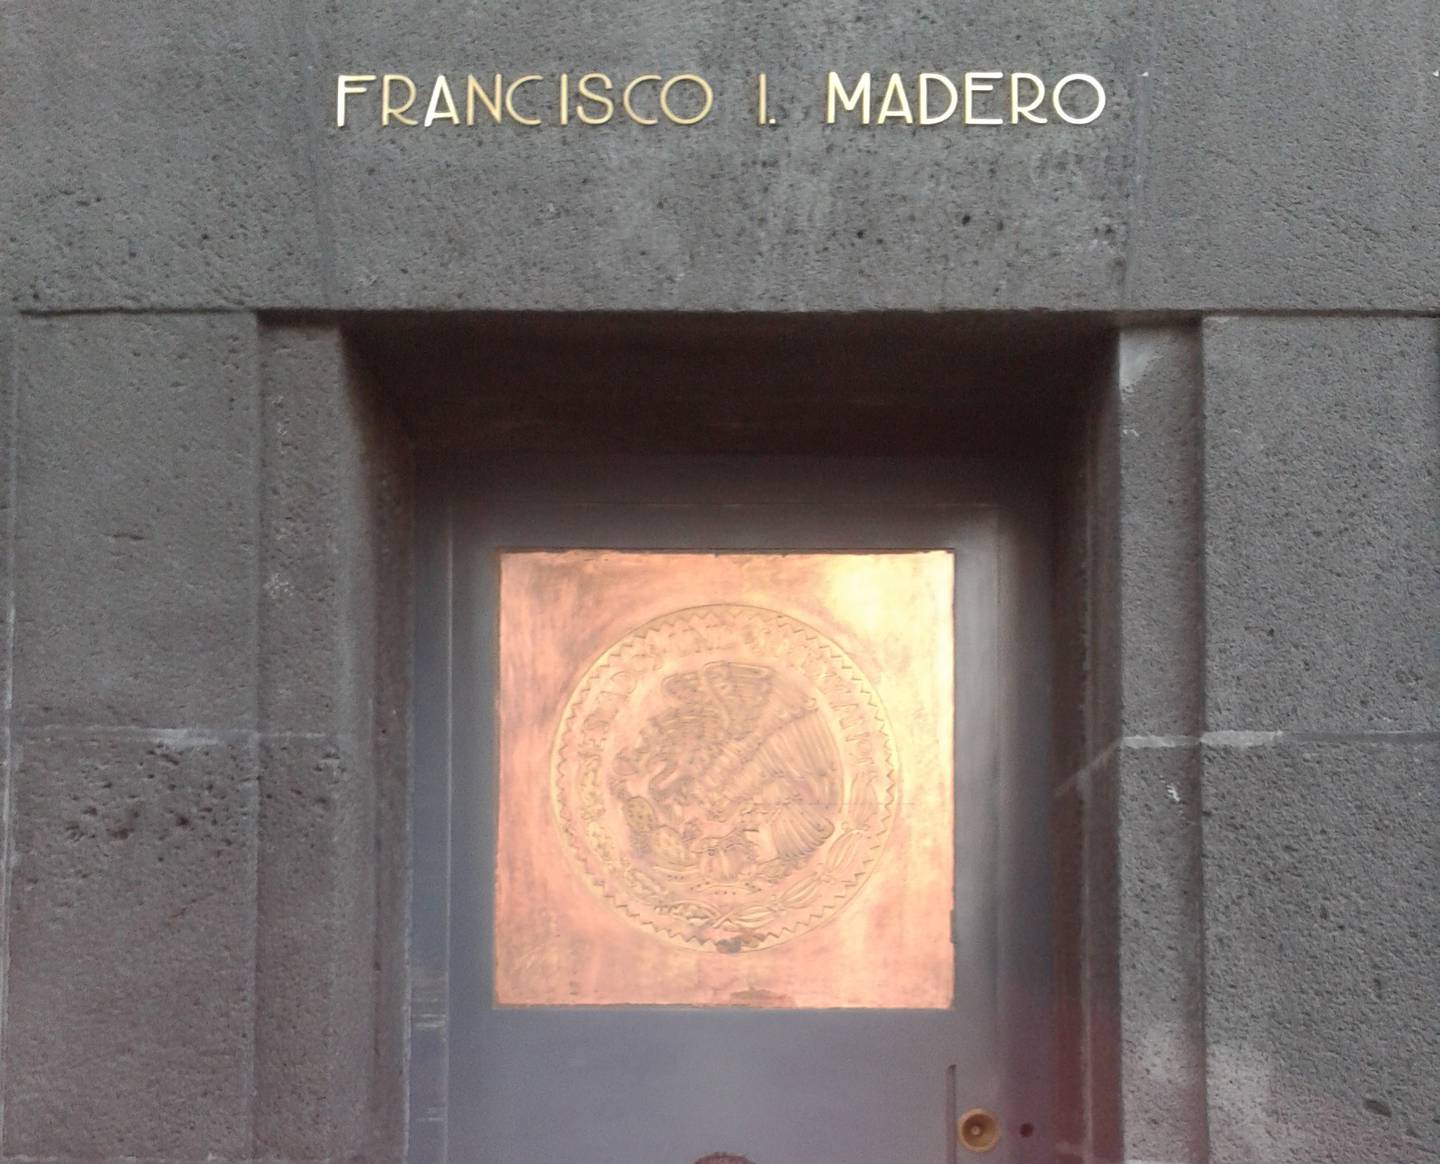 Frontispicio de la tumba del presidente Madero en el Monumento a la Revolución
Mexicana. Fotografía propiedad del autor.